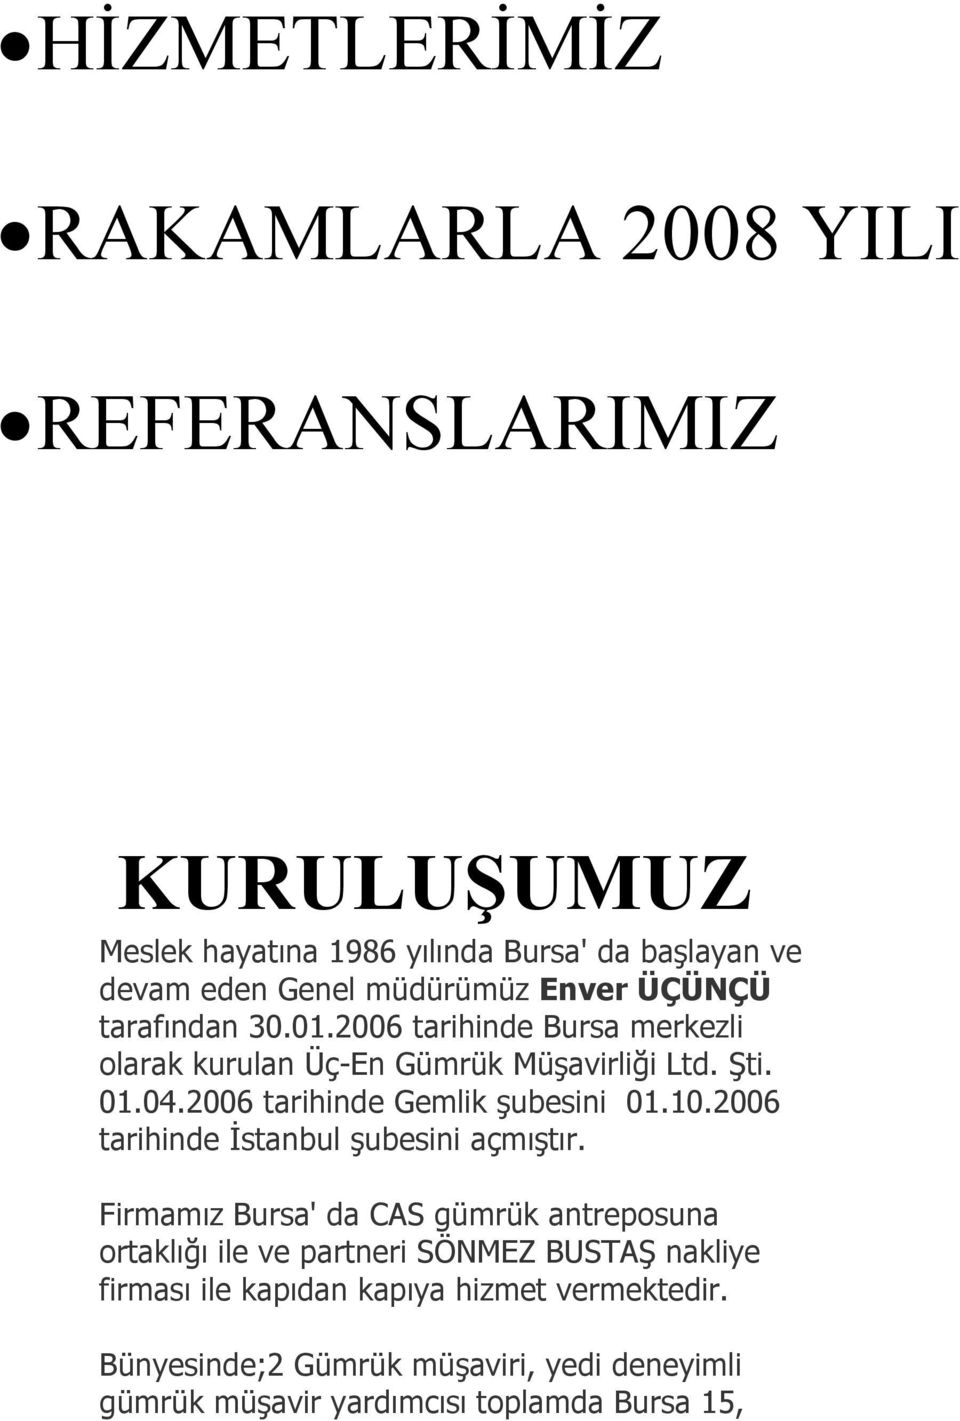 2006 tarihinde Gemlik şubesini 01.10.2006 tarihinde İstanbul şubesini açmıştır.